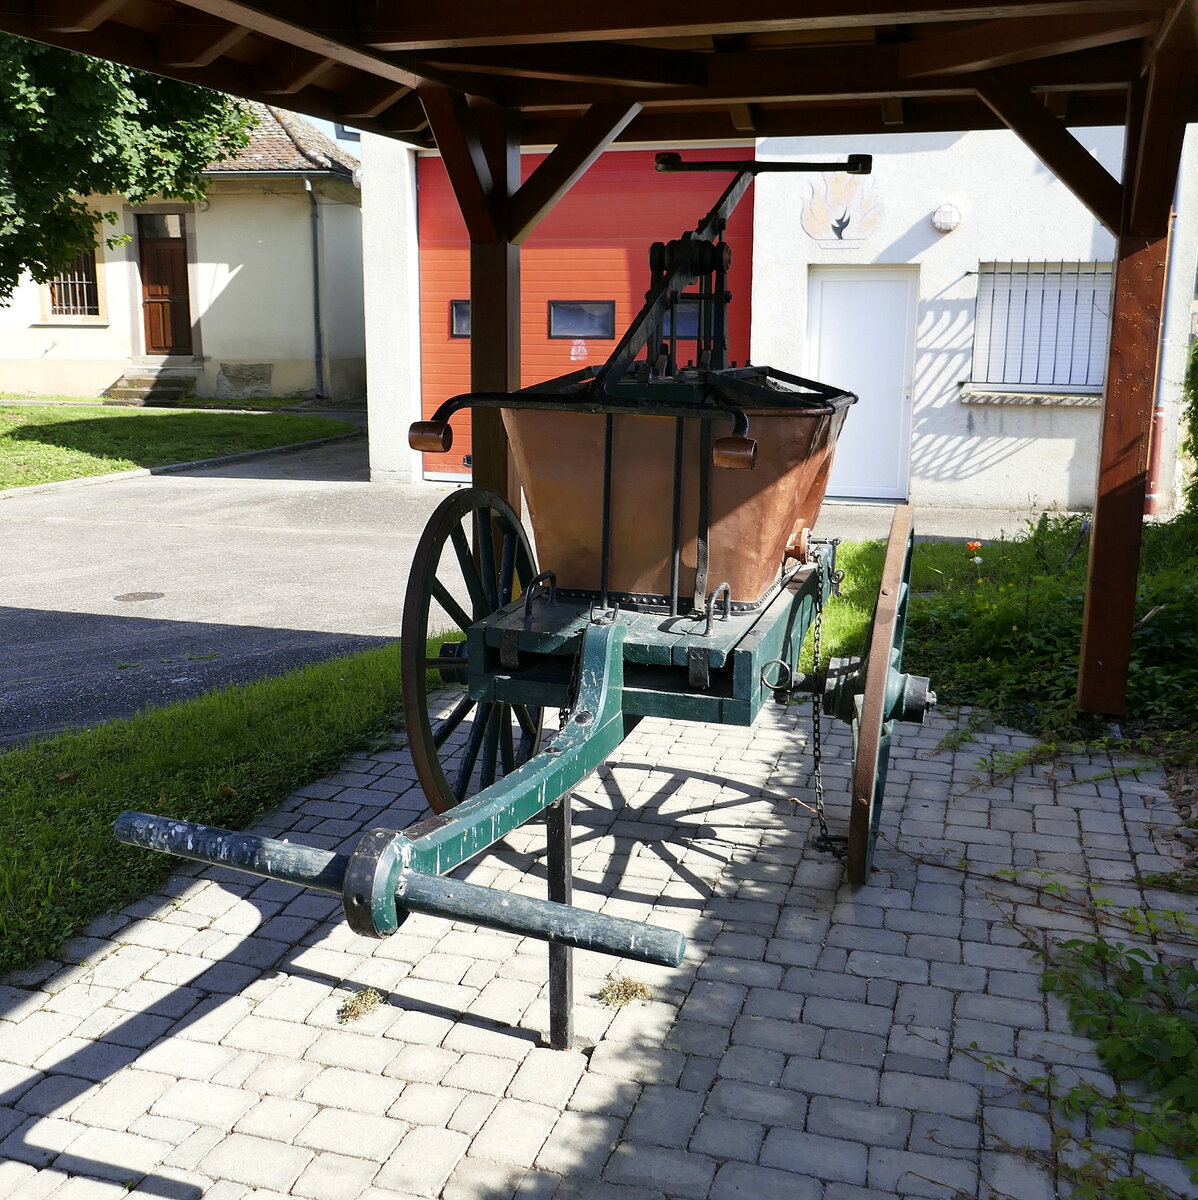 Weckolsheim im Elsaß, historische, handbetriebene Feuerwehrspritze als technisches Denkmal, Juli 2021